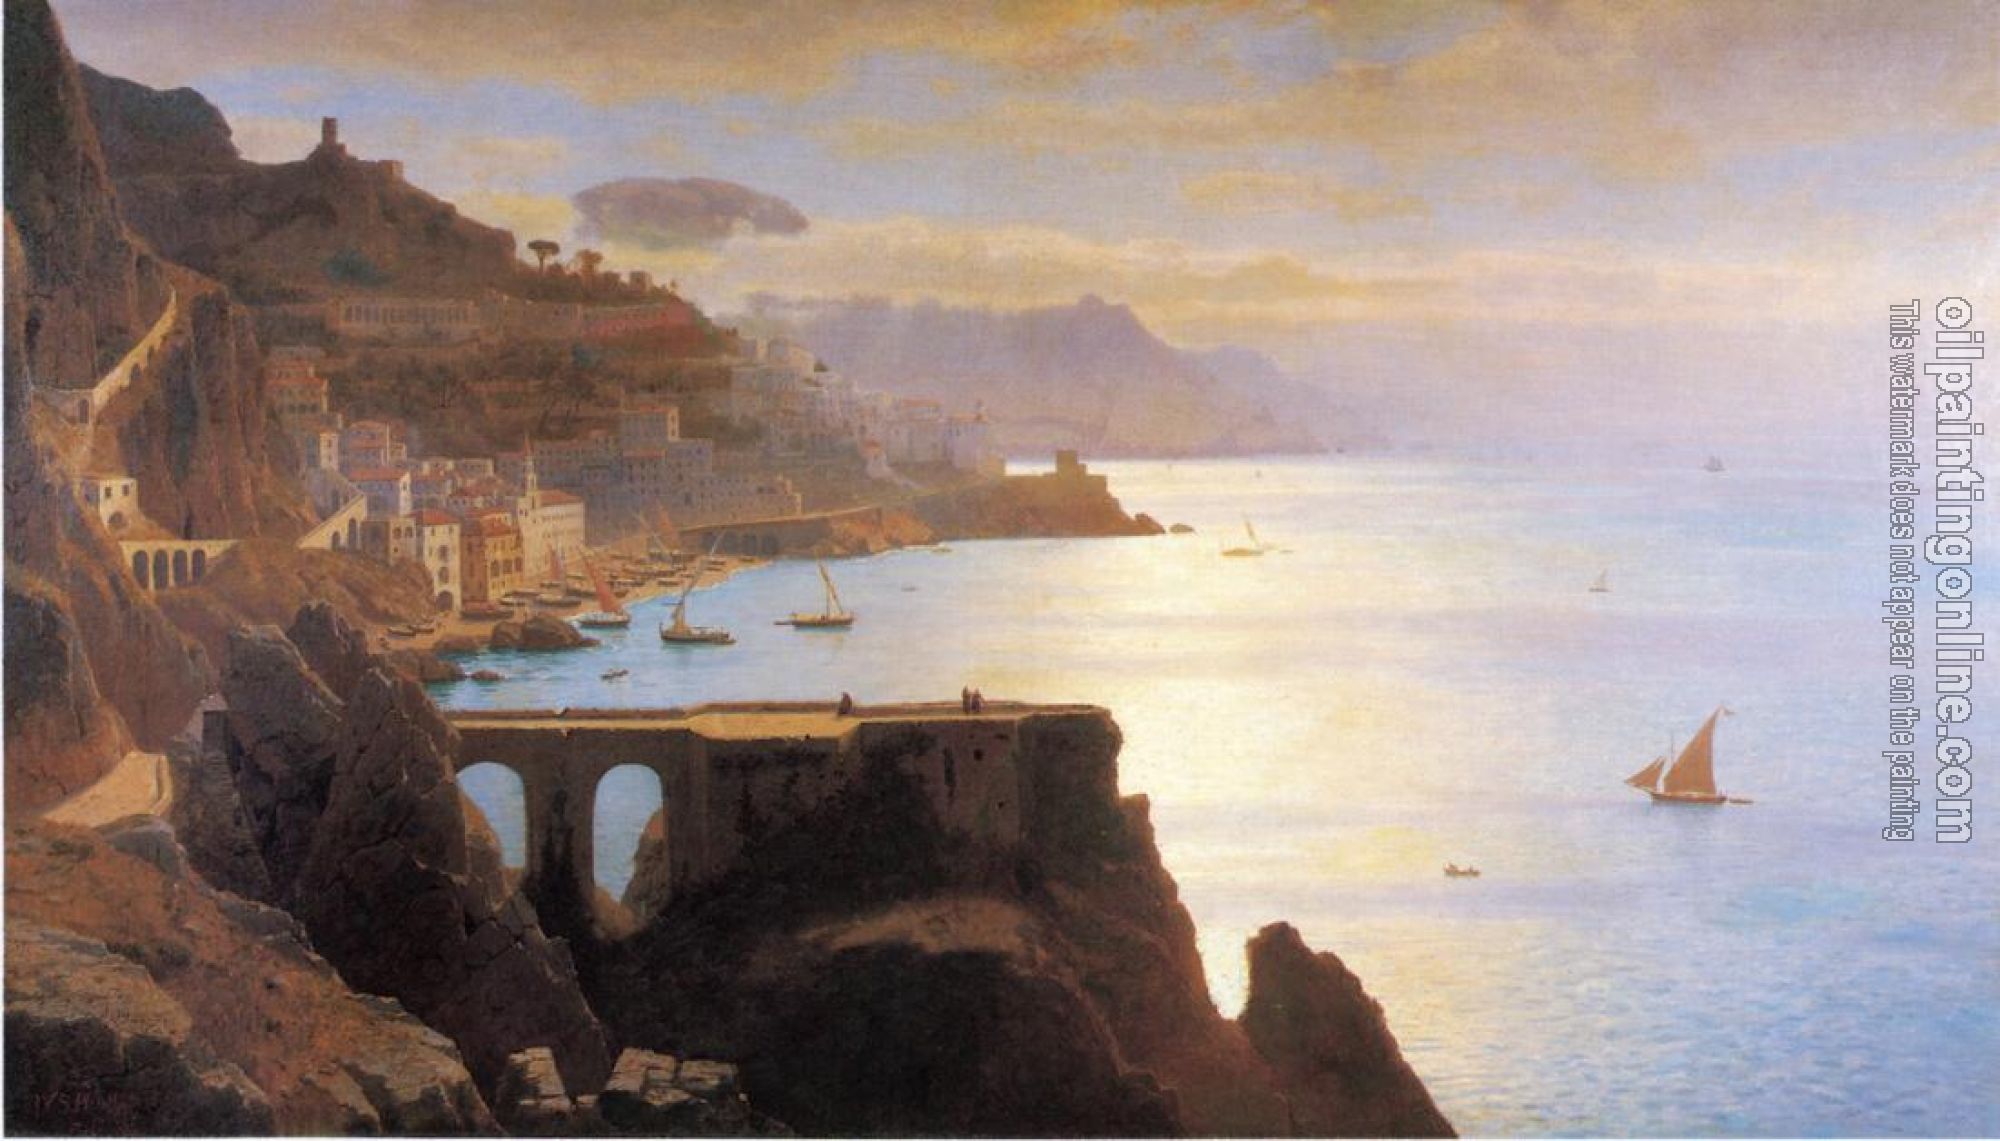 William Stanley Haseltine - Amalfi Coast